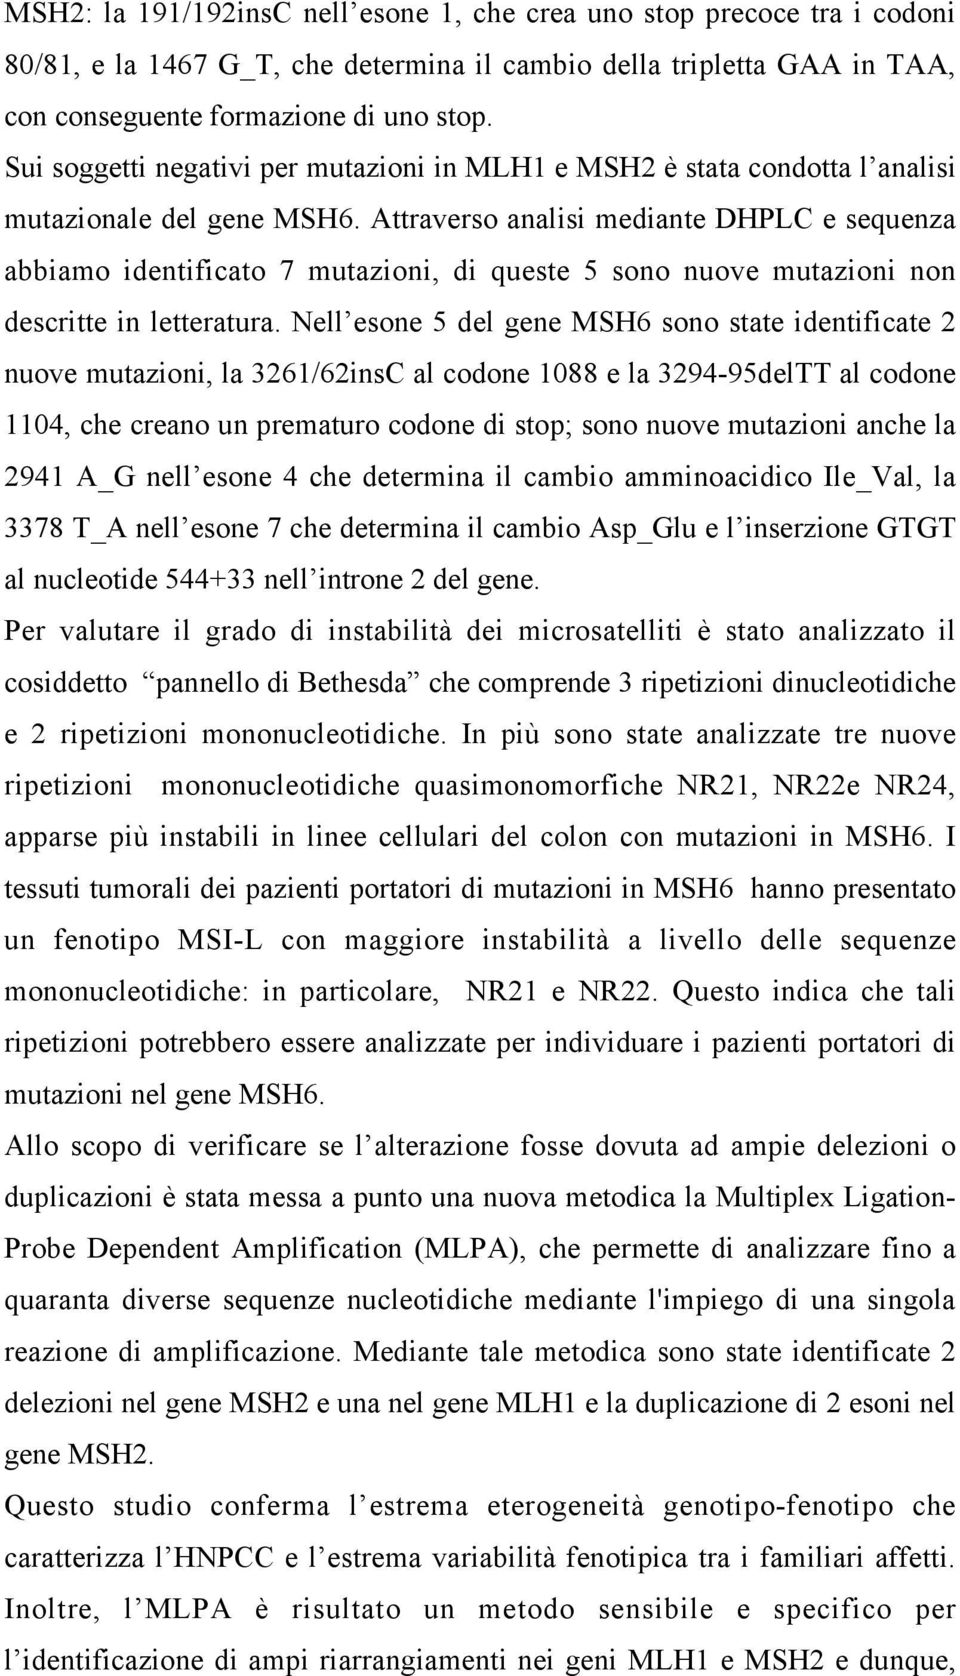 Attraverso analisi mediante DHPLC e sequenza abbiamo identificato 7 mutazioni, di queste 5 sono nuove mutazioni non descritte in letteratura.